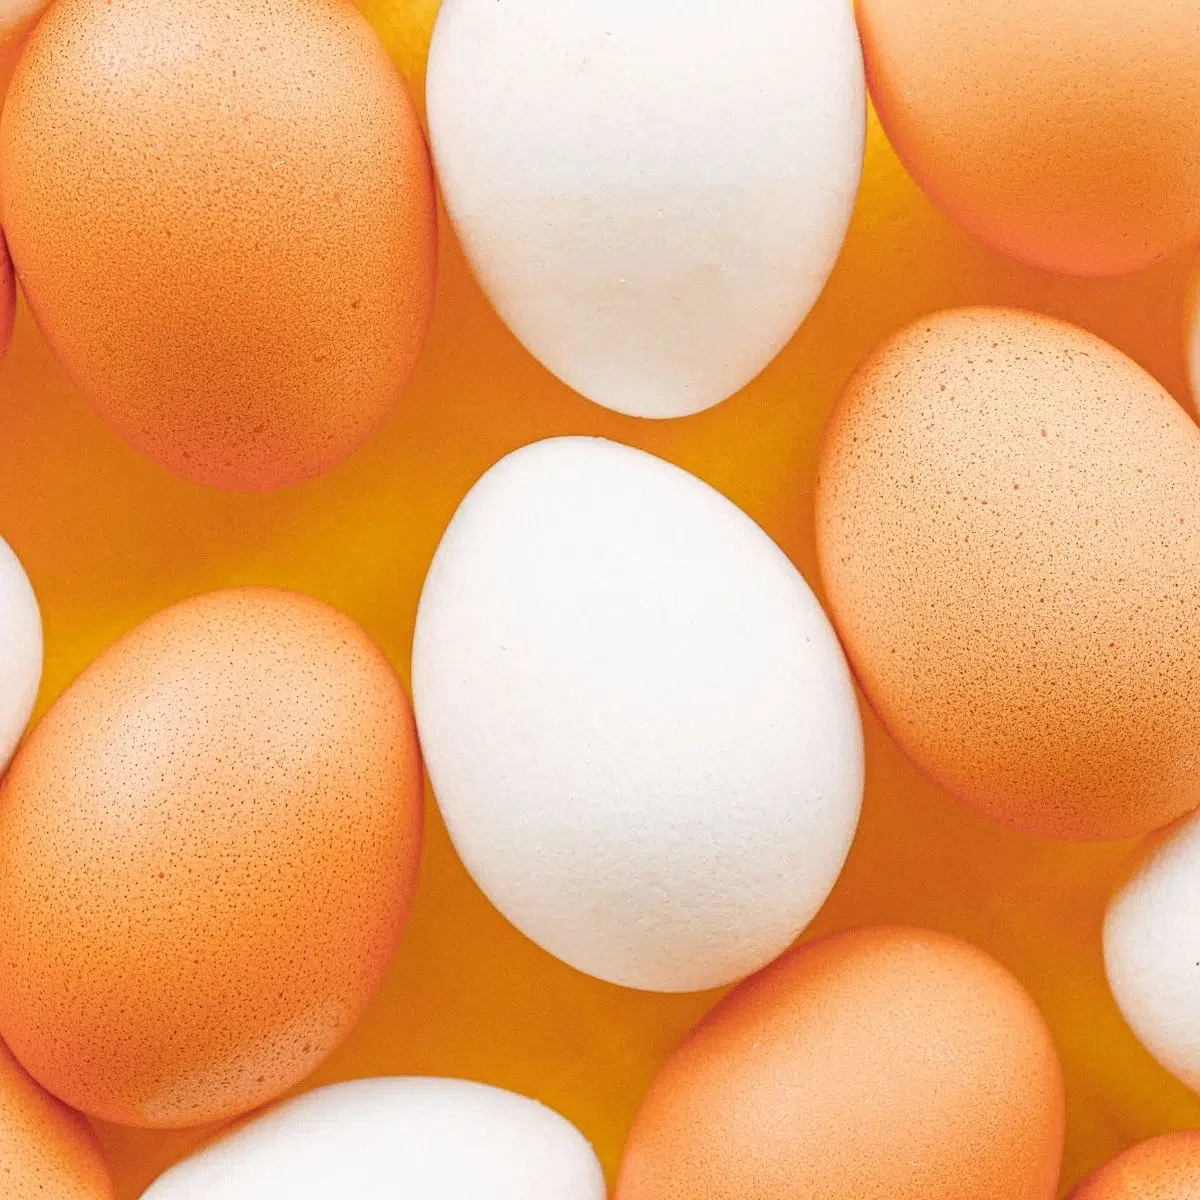 Melhor imagem quadrada substituto eqq de ovos marrons e brancos inteiros variados.